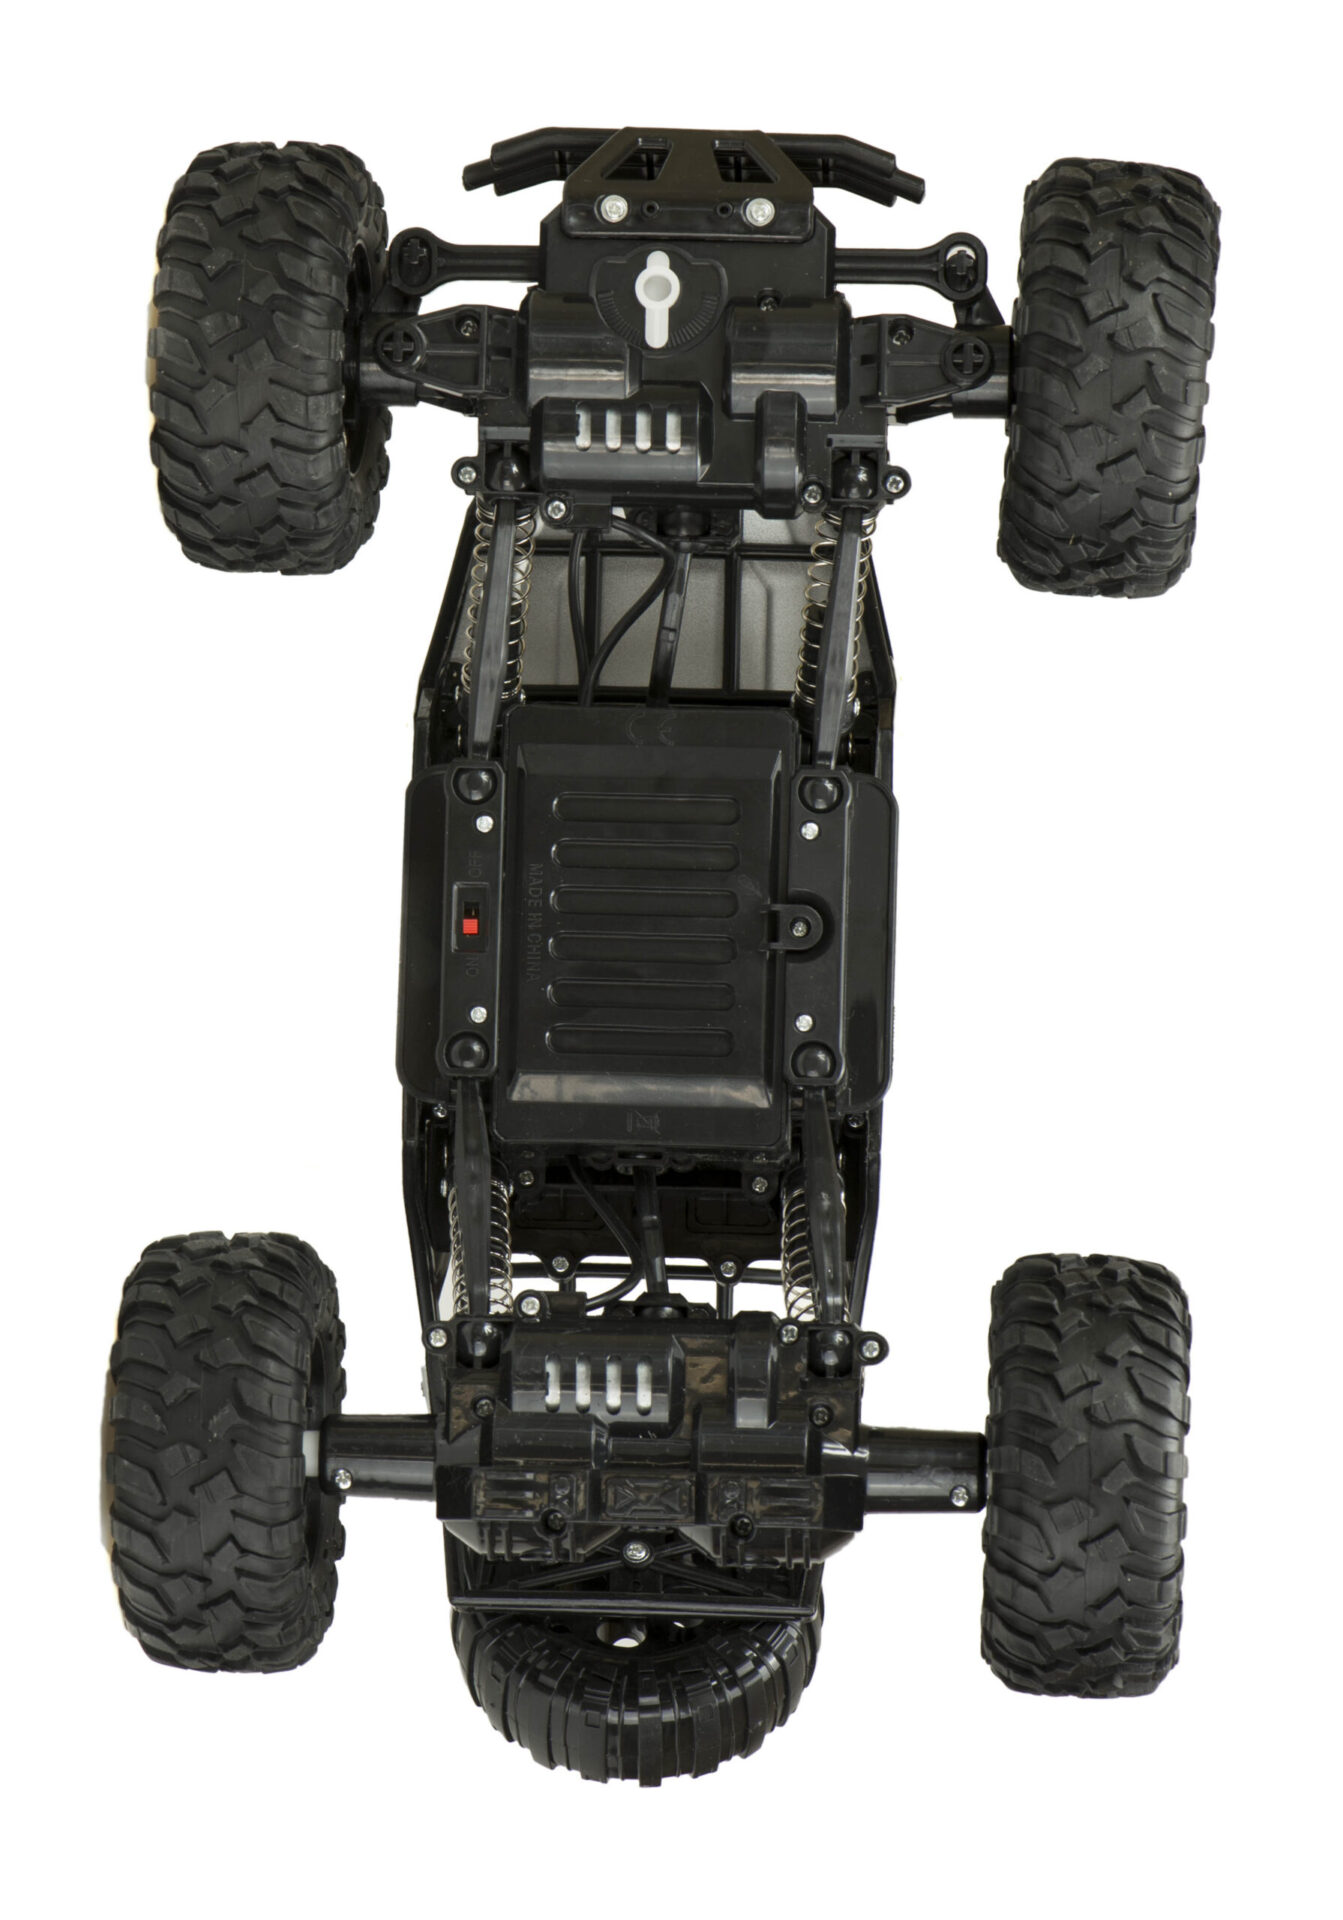 Samochod-RC-zdalnie-sterowany-Rock-Crawler-1-12-4WD-METAL-srebrny-138176.jpg